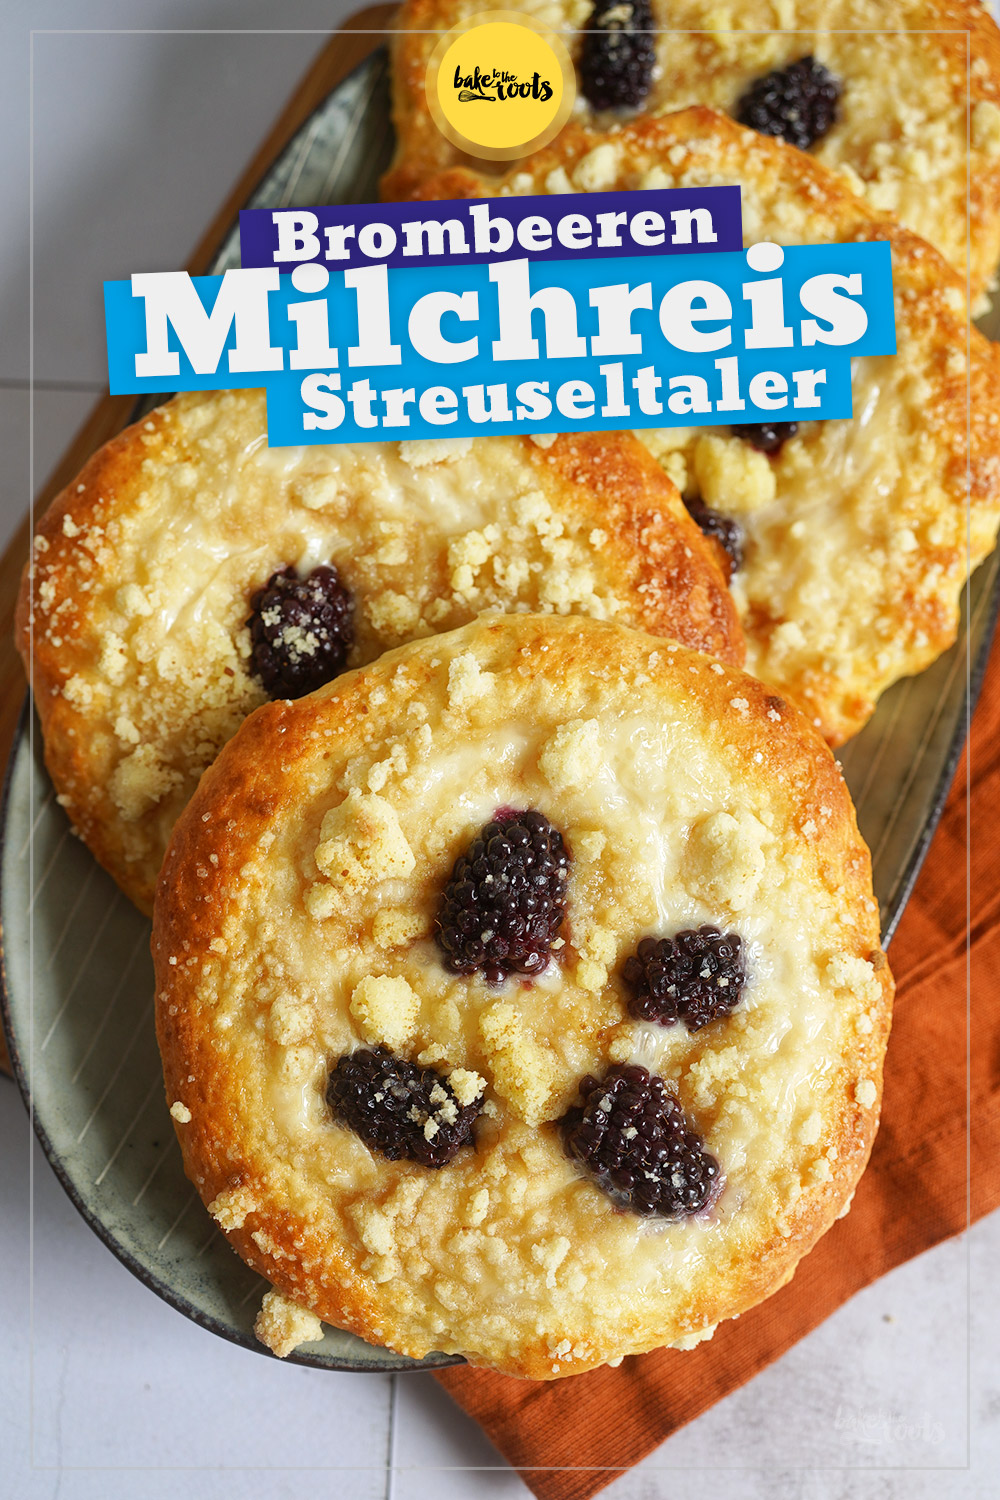 Milchreis Streuseltaler mit Brombeeren | Bake to the roots